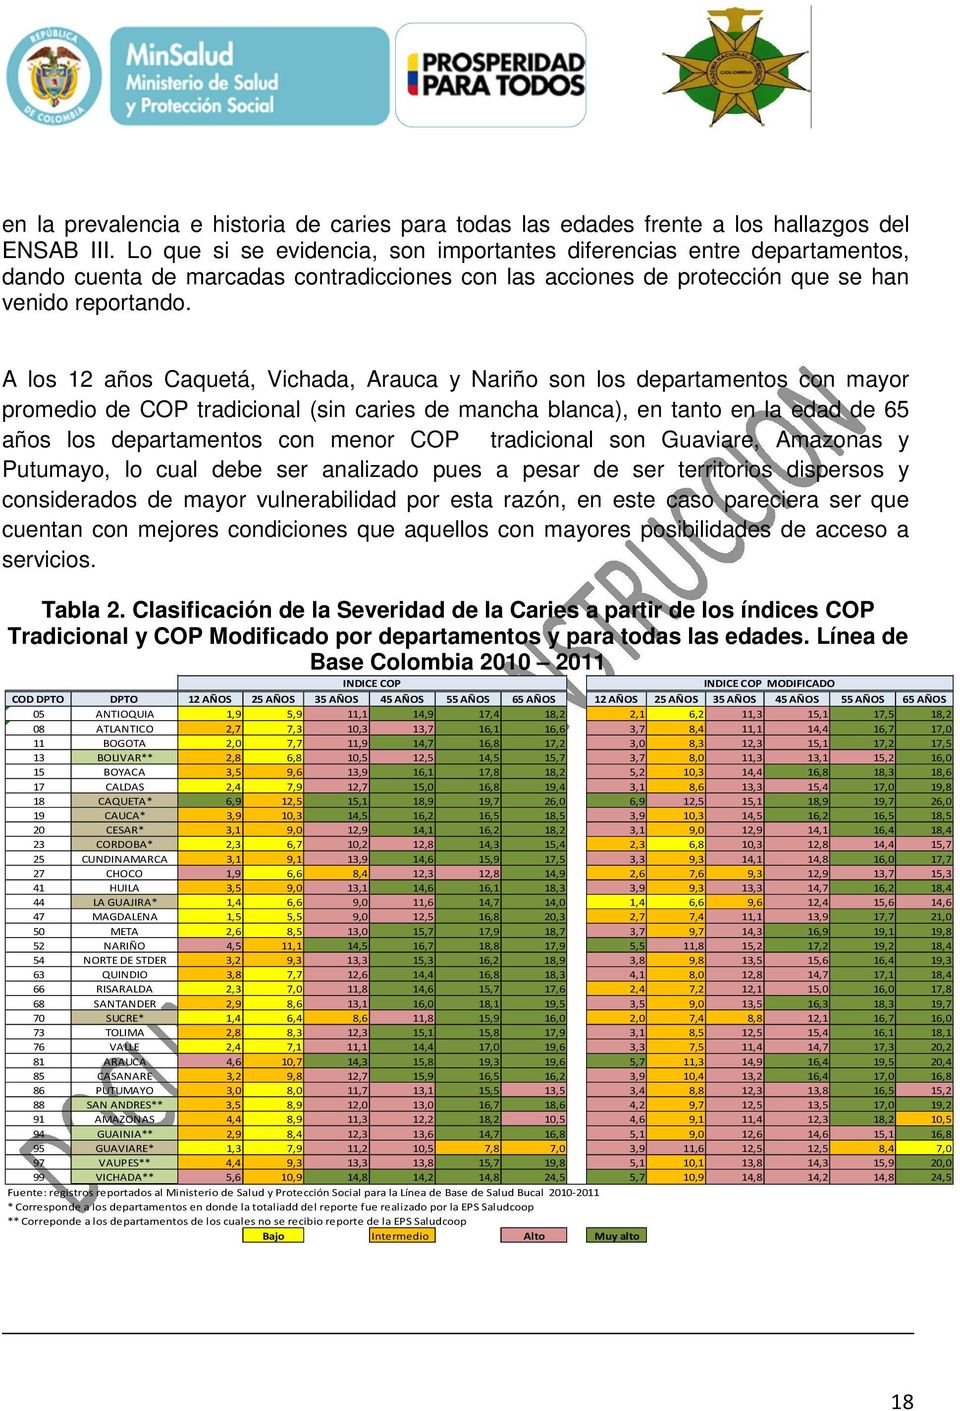 A los 12 años Caquetá, Vichada, Arauca y Nariño son los departamentos con mayor promedio de COP tradicional (sin caries de mancha blanca), en tanto en la edad de 65 años los departamentos con menor